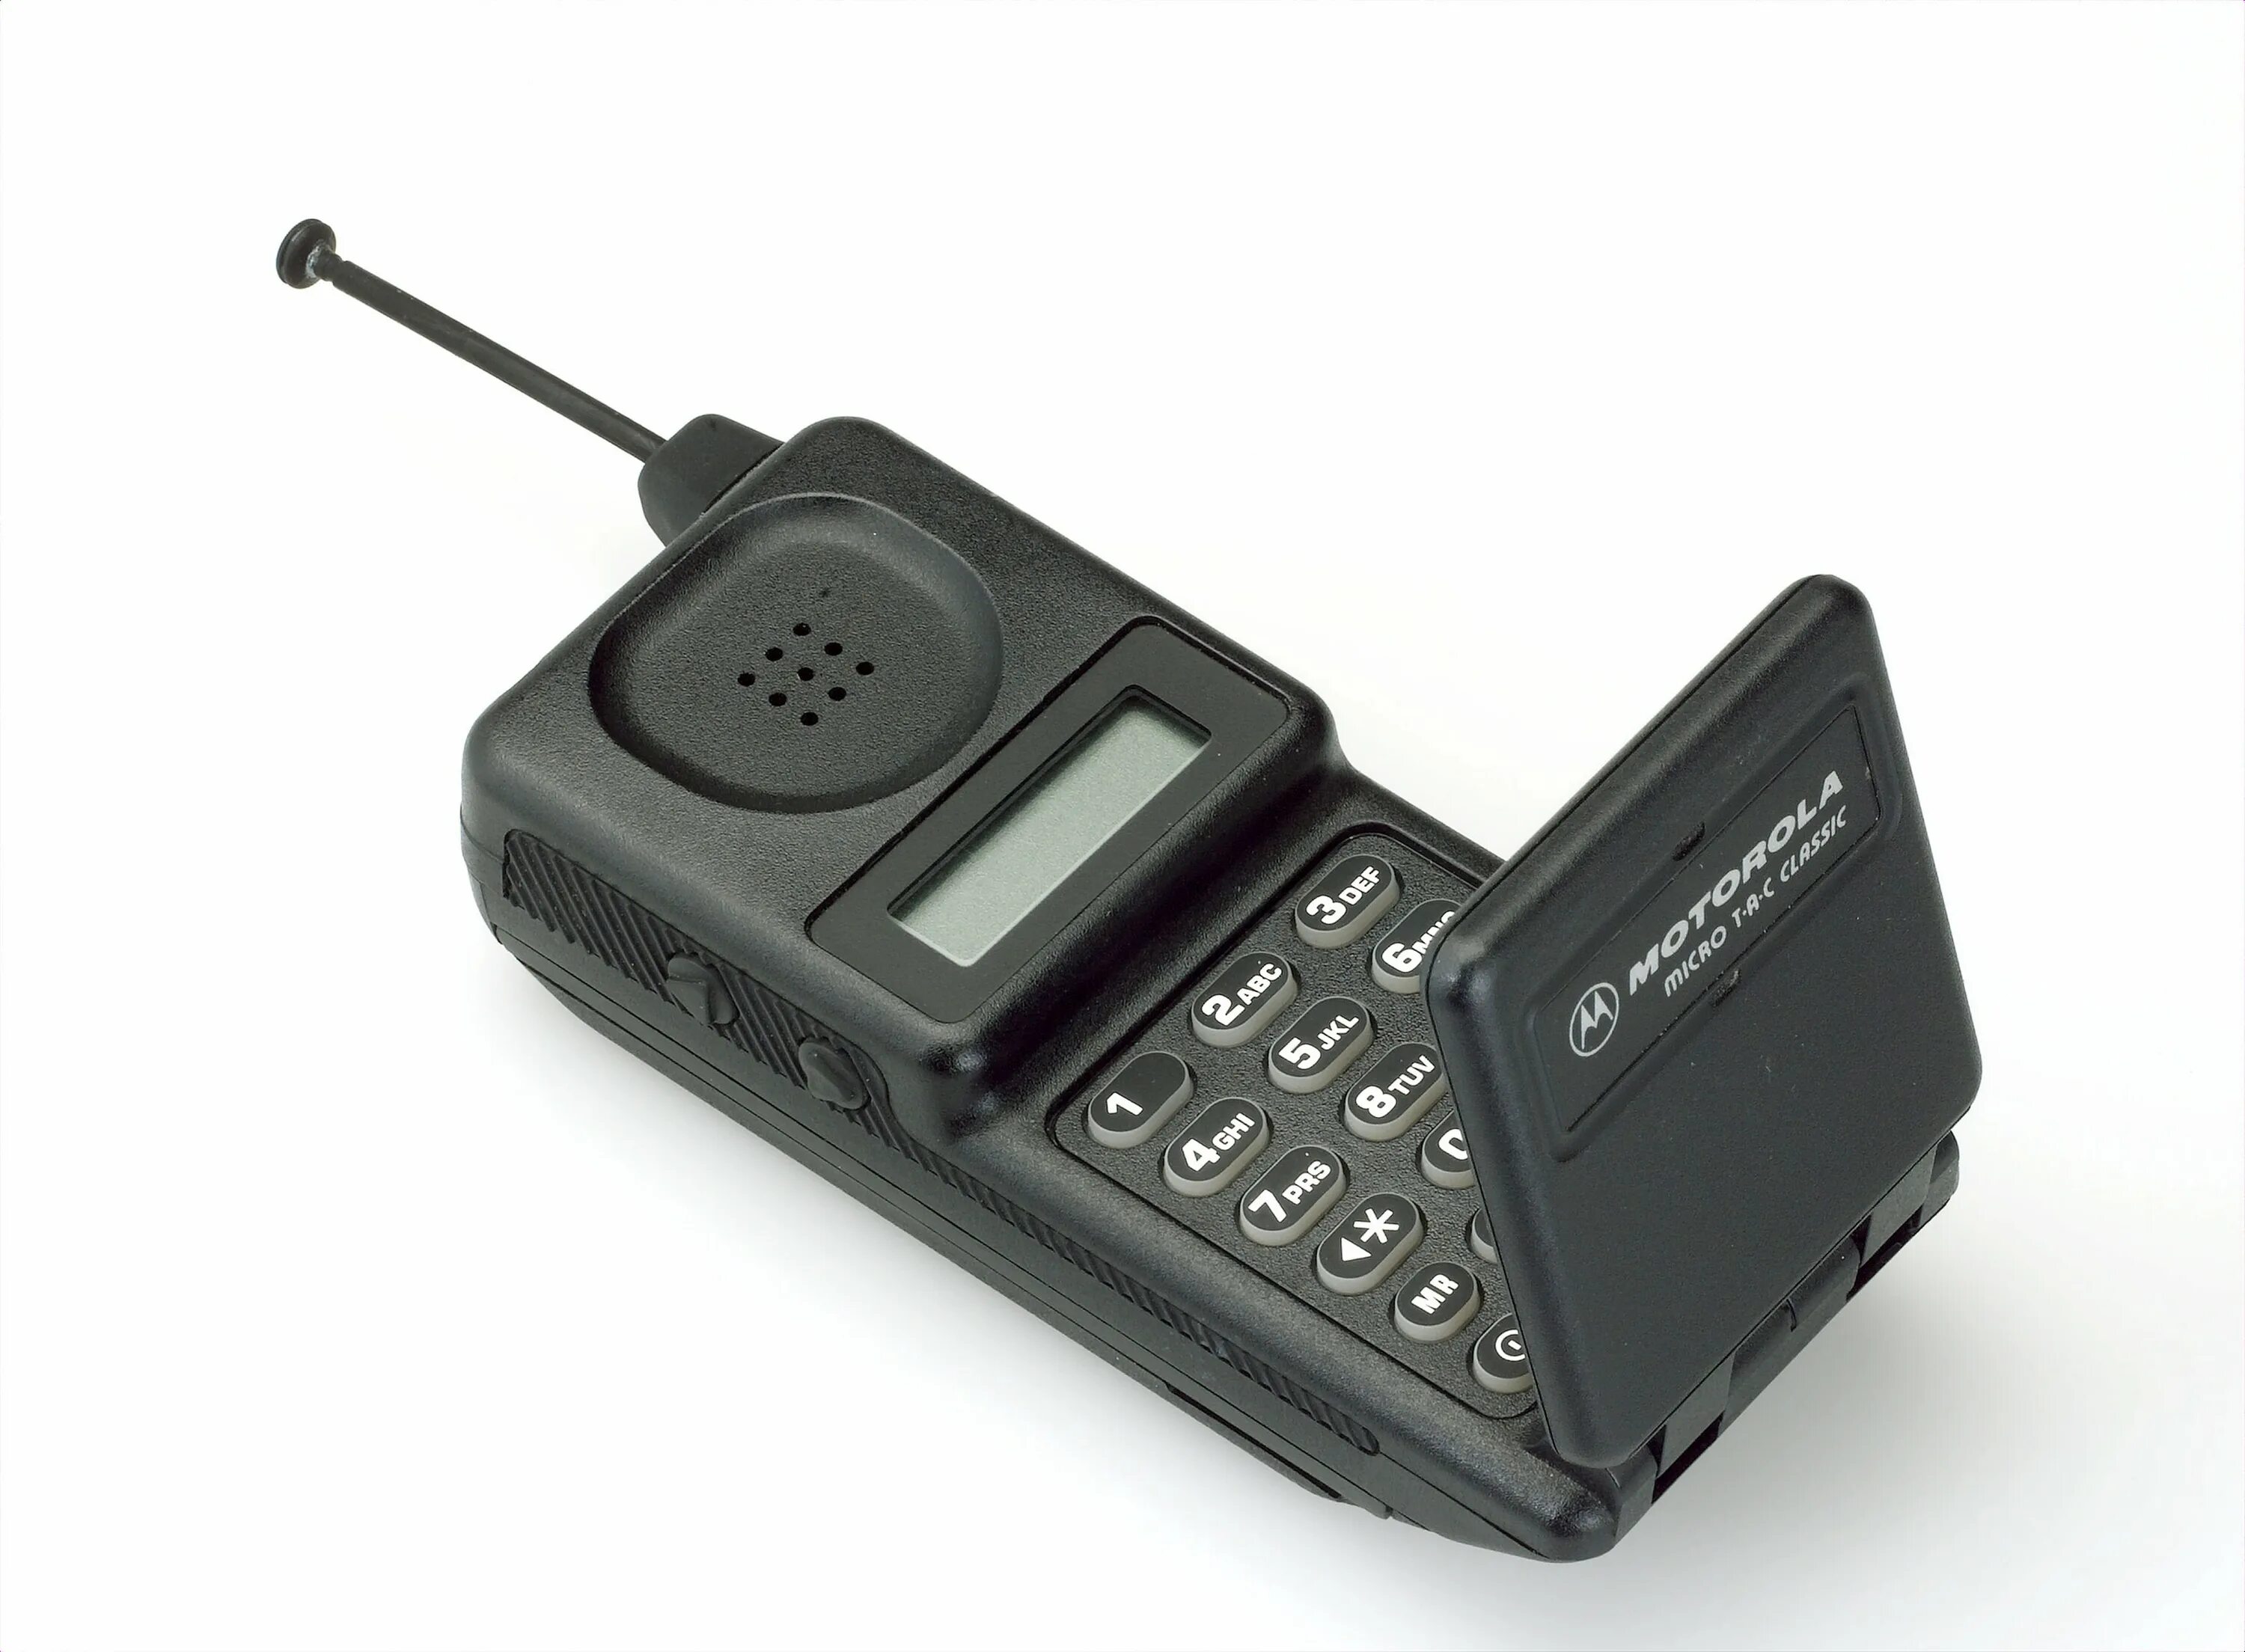 S phone one. Motorola MICROTAC 9800x. Моторола микротак 9800. Первый сотовый телефон Моторола 1990. Motorola MICROTAC 1989.